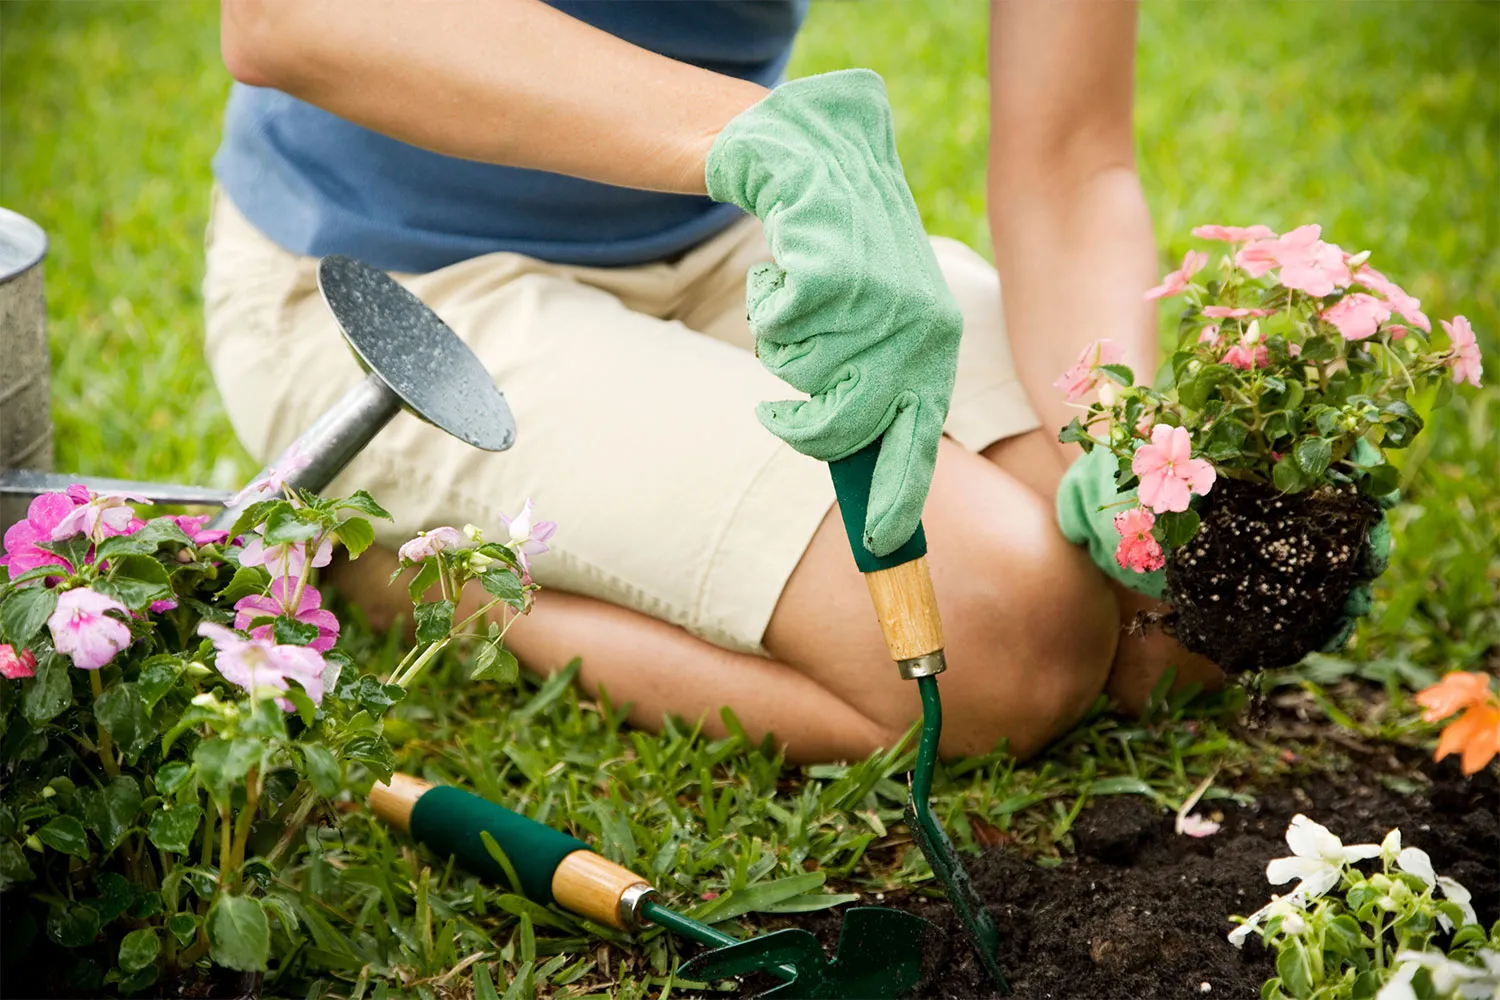 A woman doing gardening in her backyard